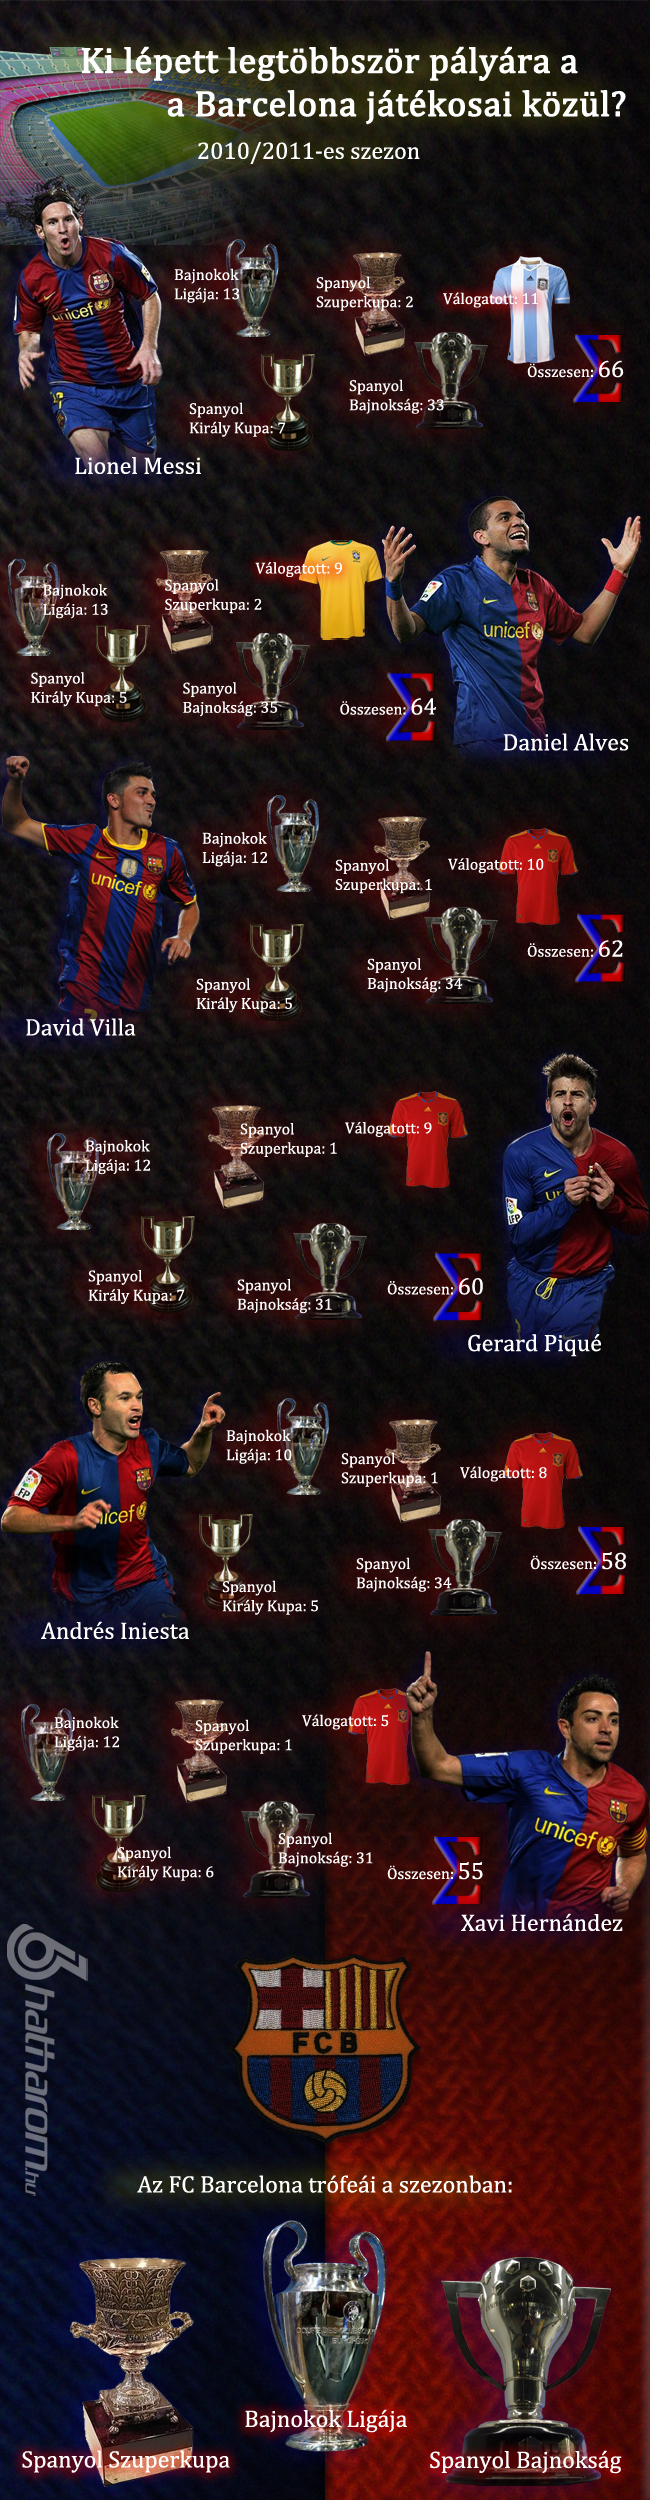 Hatharom.hu - infografika a 2011-2012-es szezonban legtöbbet pályára lépő barcelonai labdarúgókról